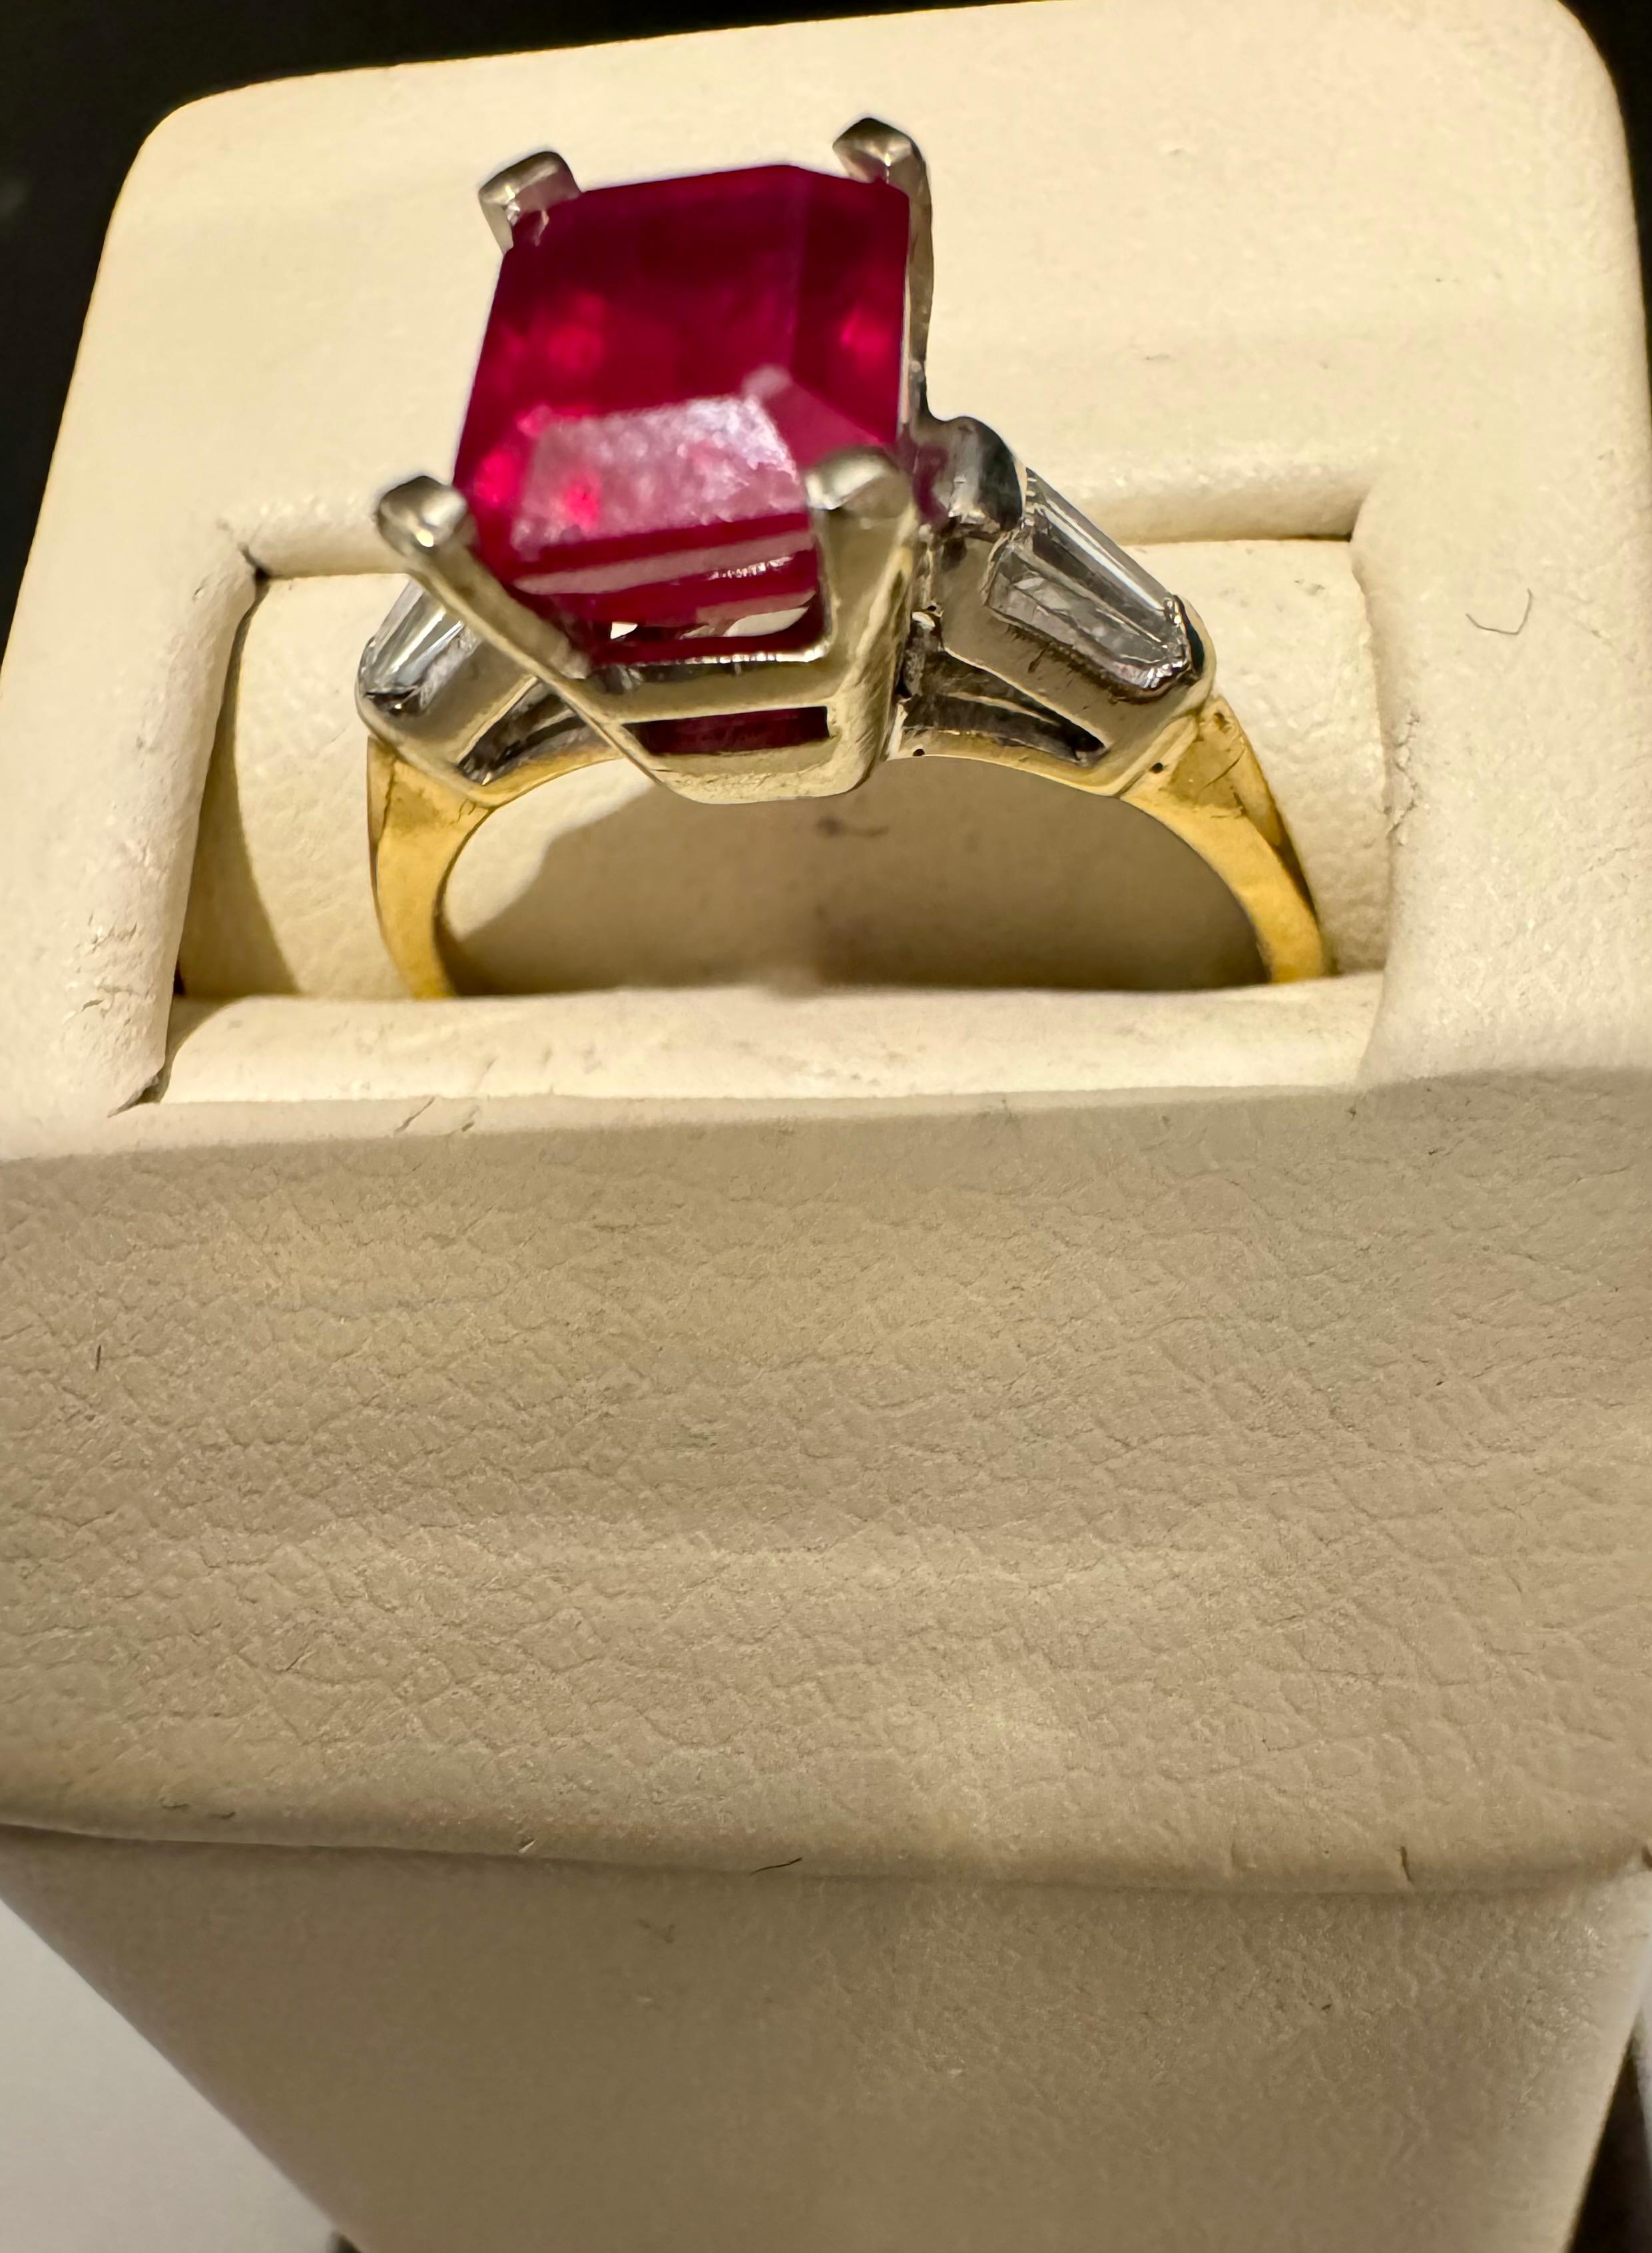 2.5 Ct Emerald Cut Treated Ruby & 0.15 ct Diamond Ring 14 Kt White Gold Size 5
La bague en or blanc 14 carats de 2,5 carats de rubis traité à la taille d'émeraude et de 0,15 carat de diamant est une pièce vraiment étonnante. Cette bague est ornée